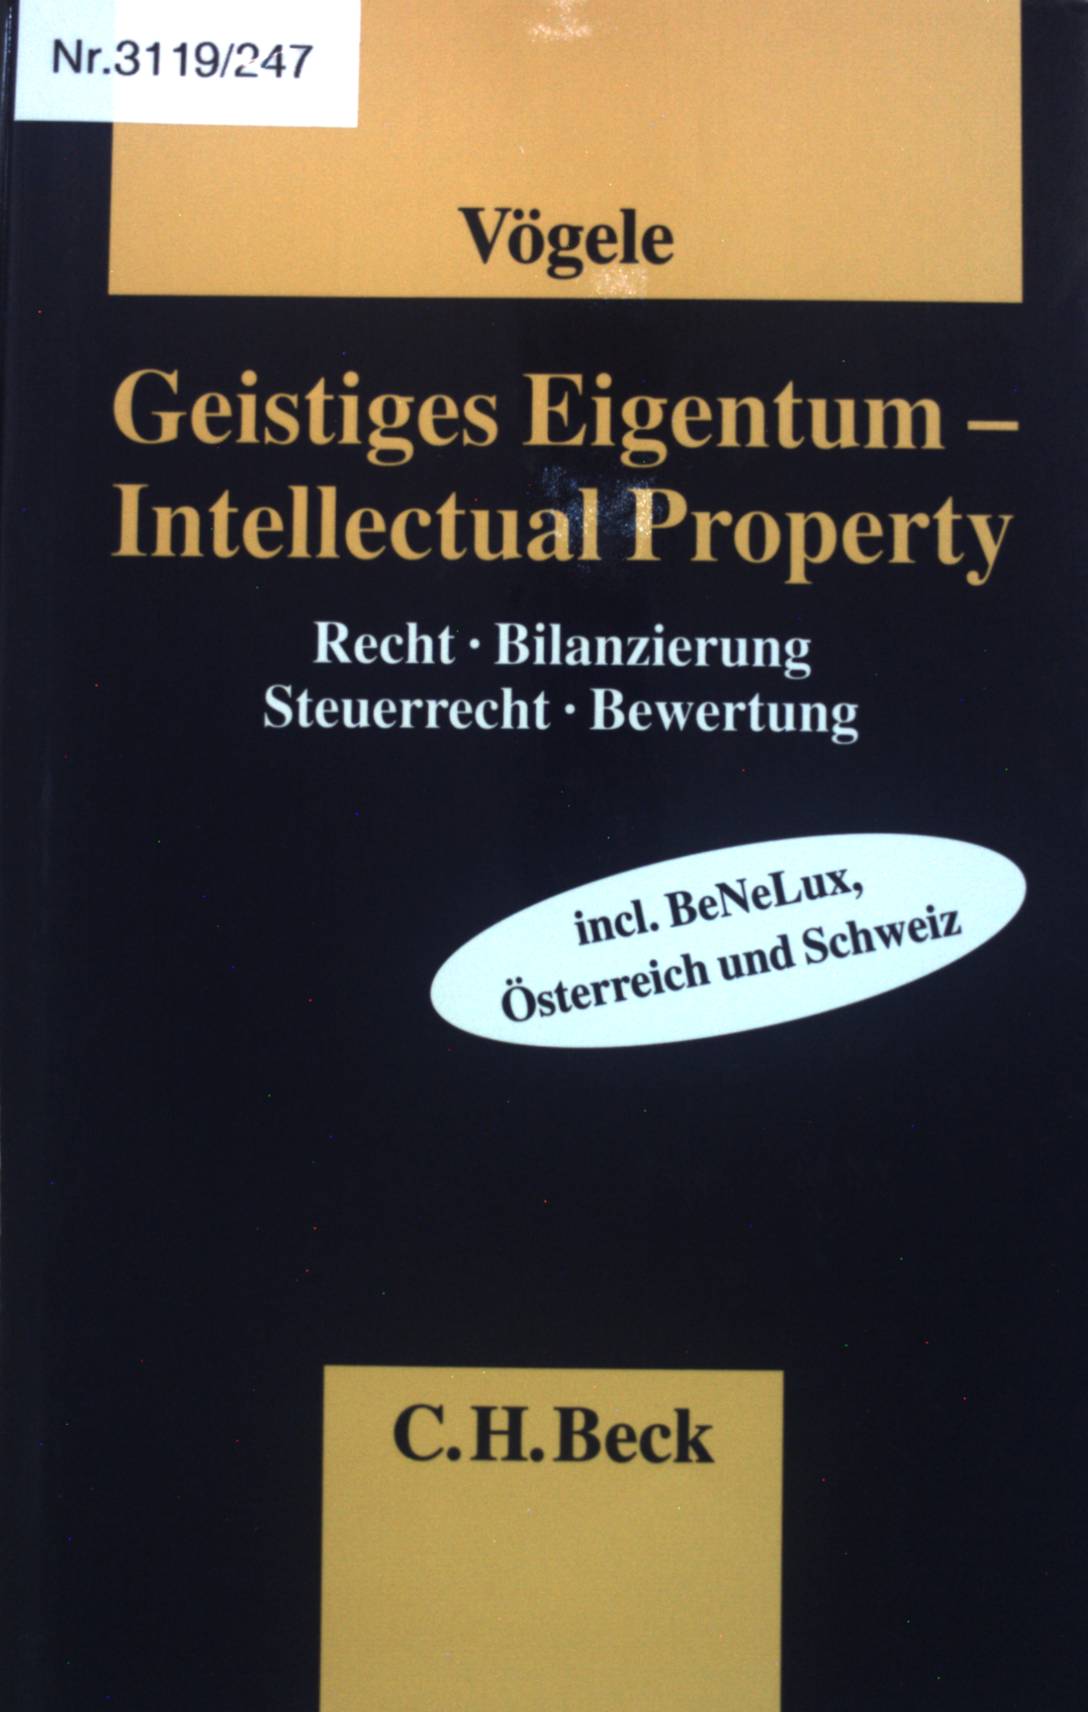 Geistiges Eigentum : [Recht, Bilanzierung, Steuerrecht, Bewertung] = Intellectual property. - Vögele, Alexander